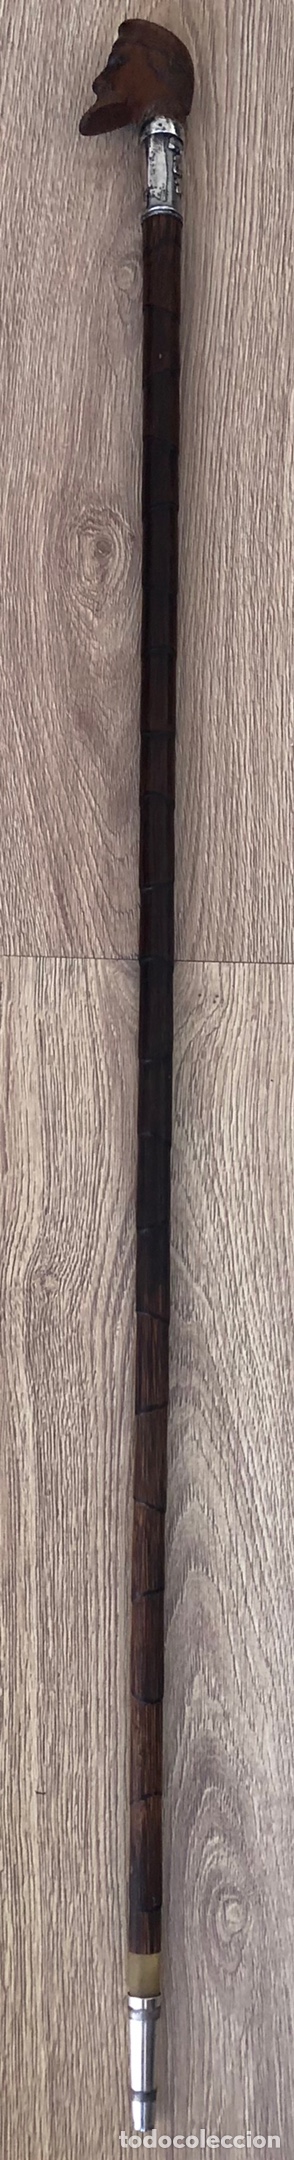 Antigüedades: Magnífico bastón antiguo, con empuñadura en talla de madera, vara de caña, plata, y punta de asta - Foto 4 - 213466631